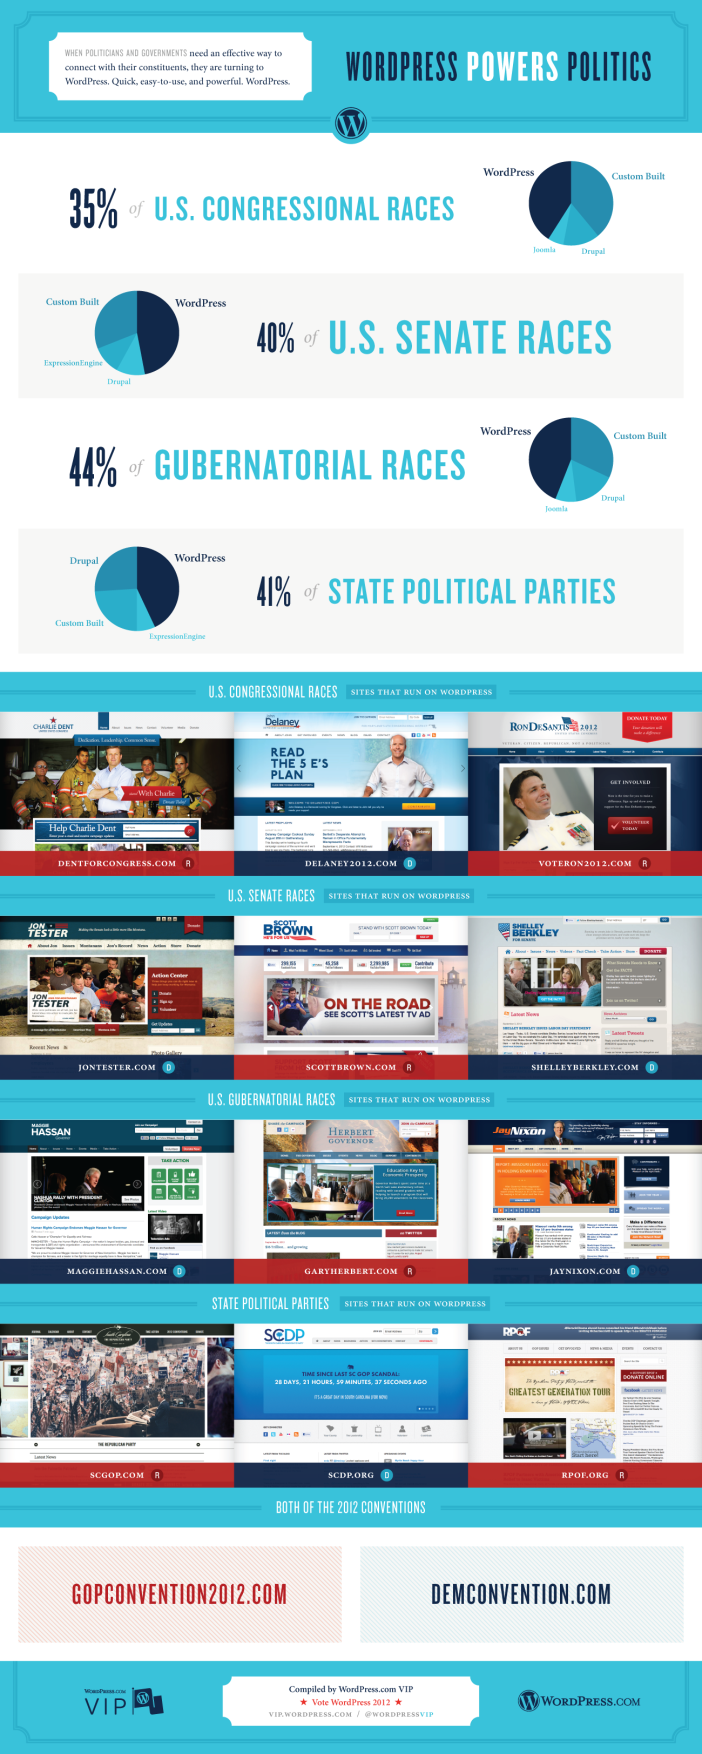 WordPress Powers Politics - Infographic